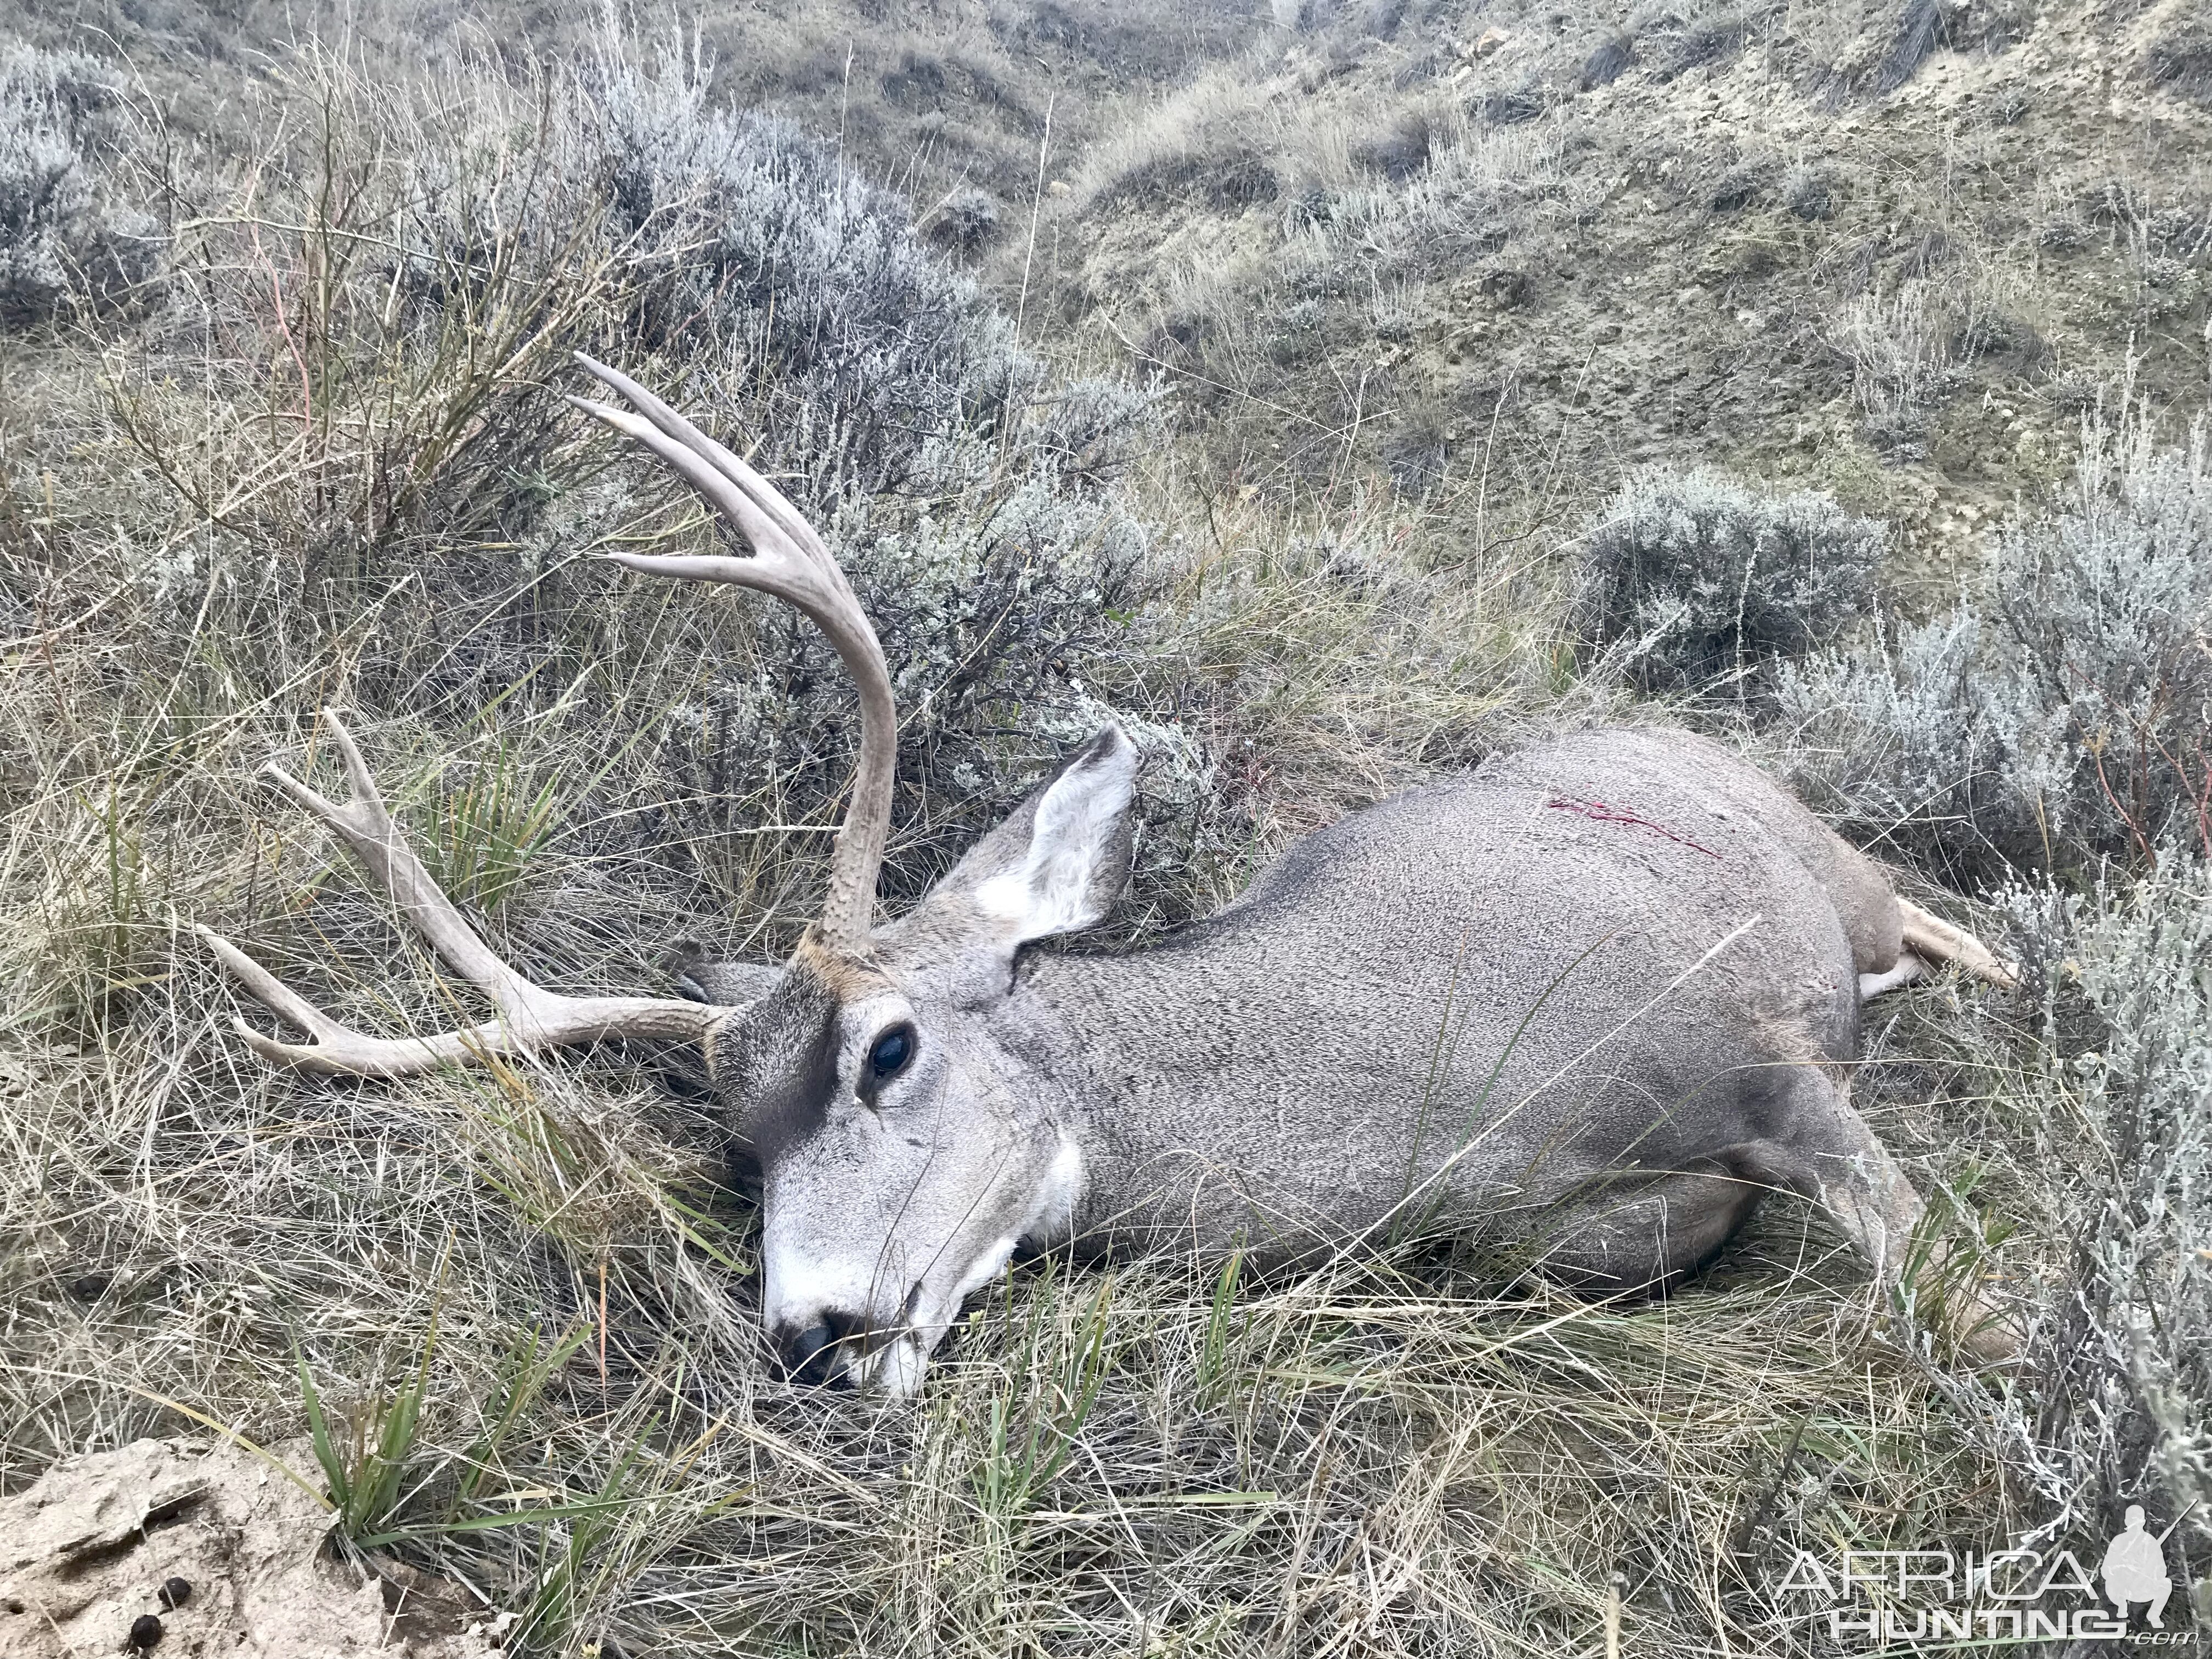 Hunt Mule Deer in Wyoming USA